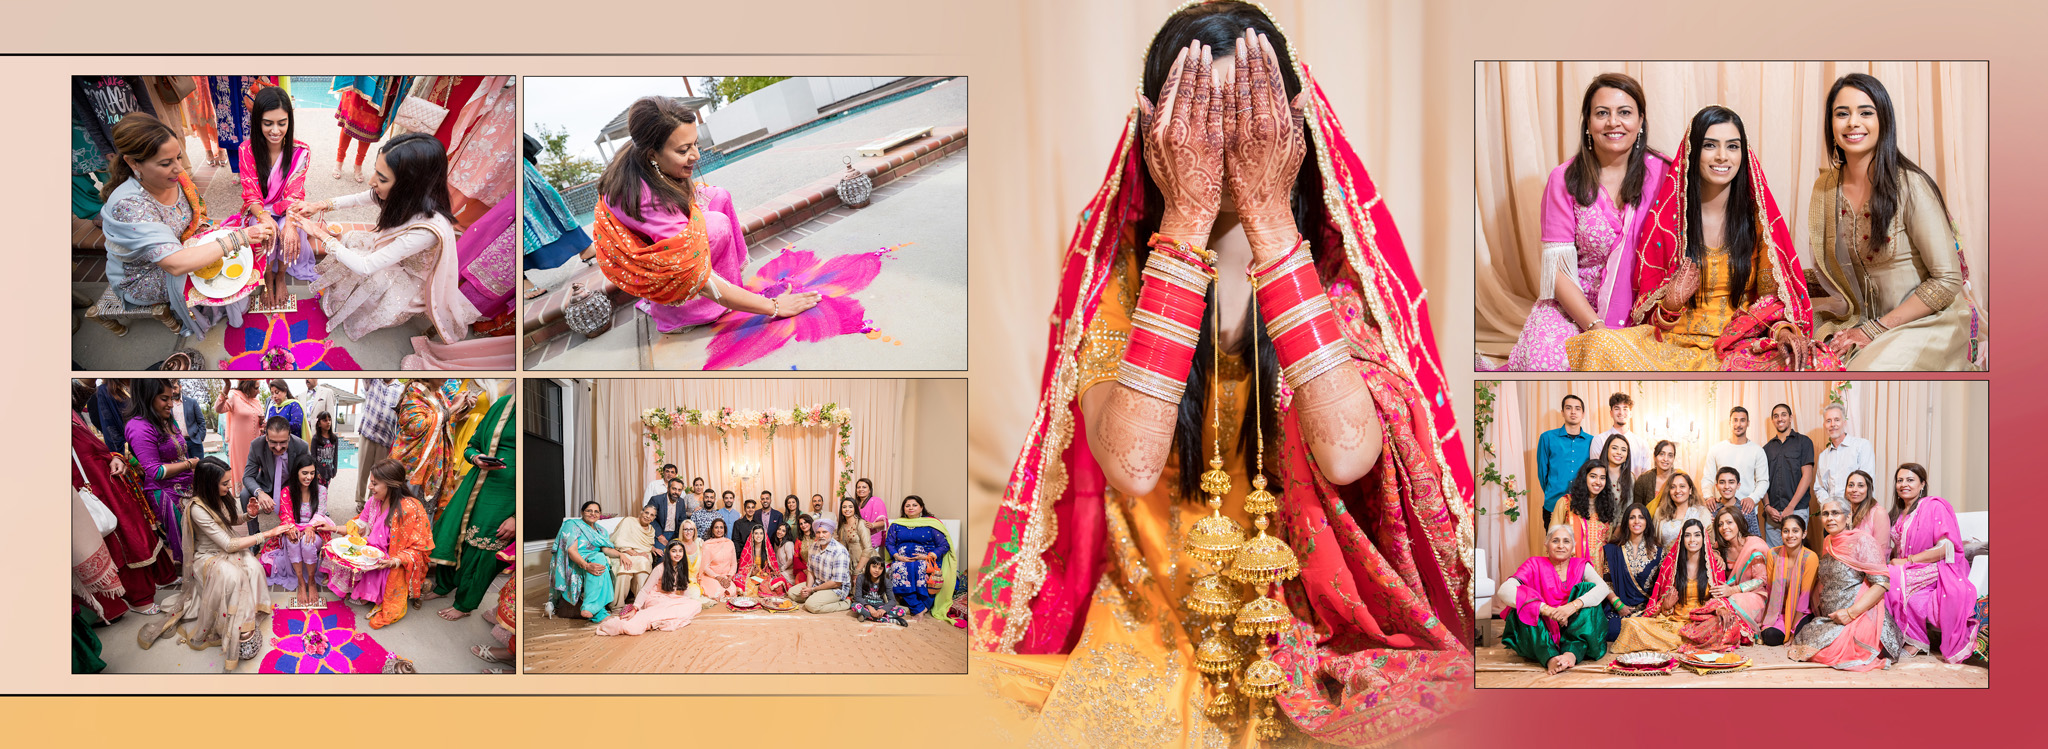 Indian wedding album design bride Maiyaan ceremony